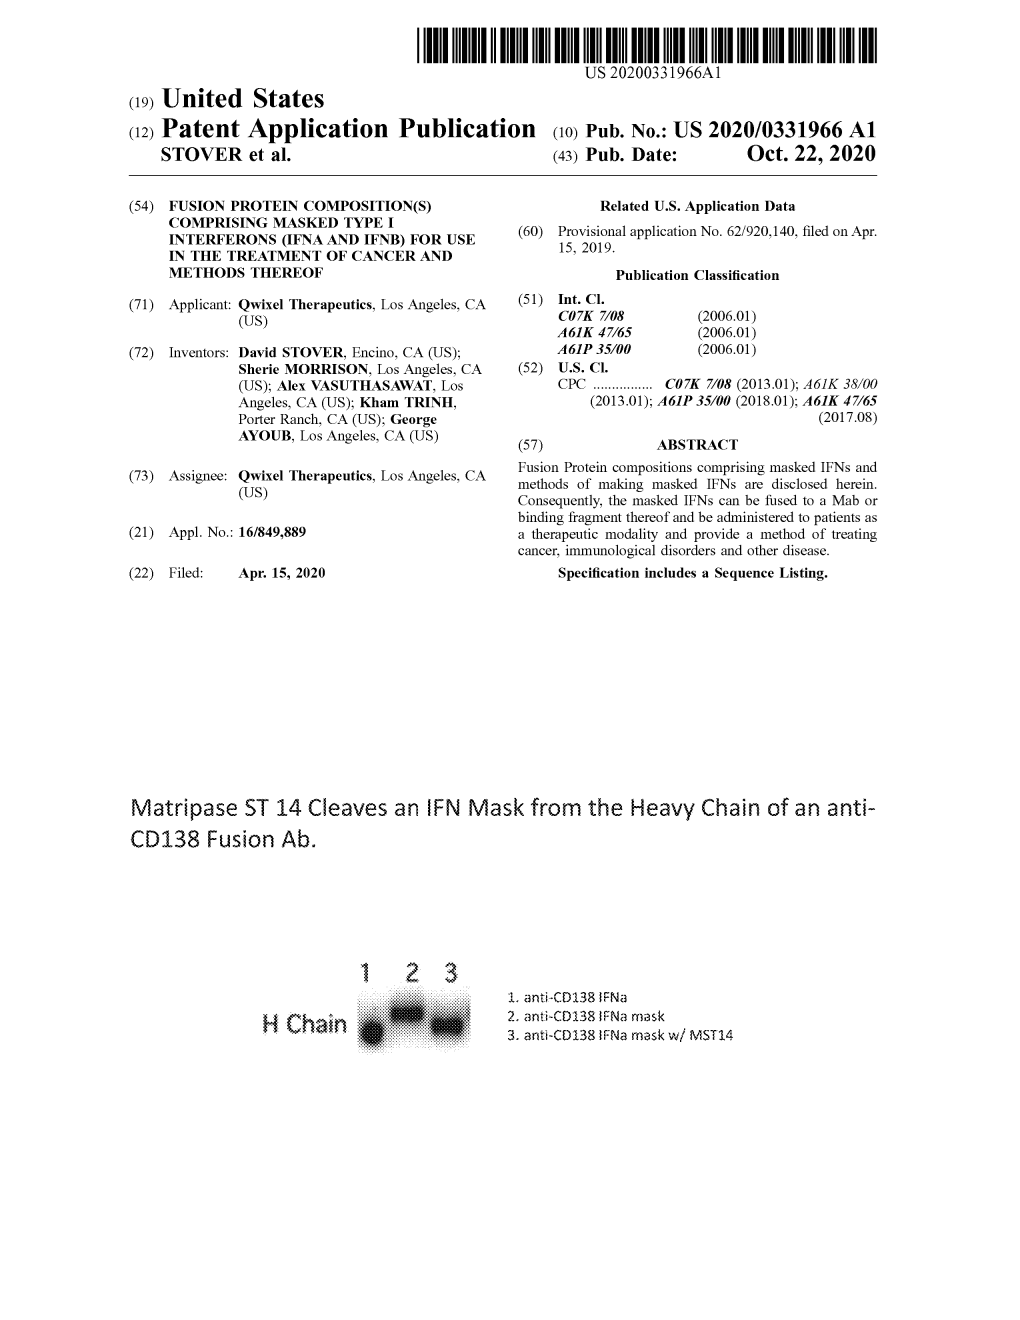 ( 12 ) Patent Application Publication ( 10 ) Pub . No .: US 2020/0331966 A1 STOVER Et Al